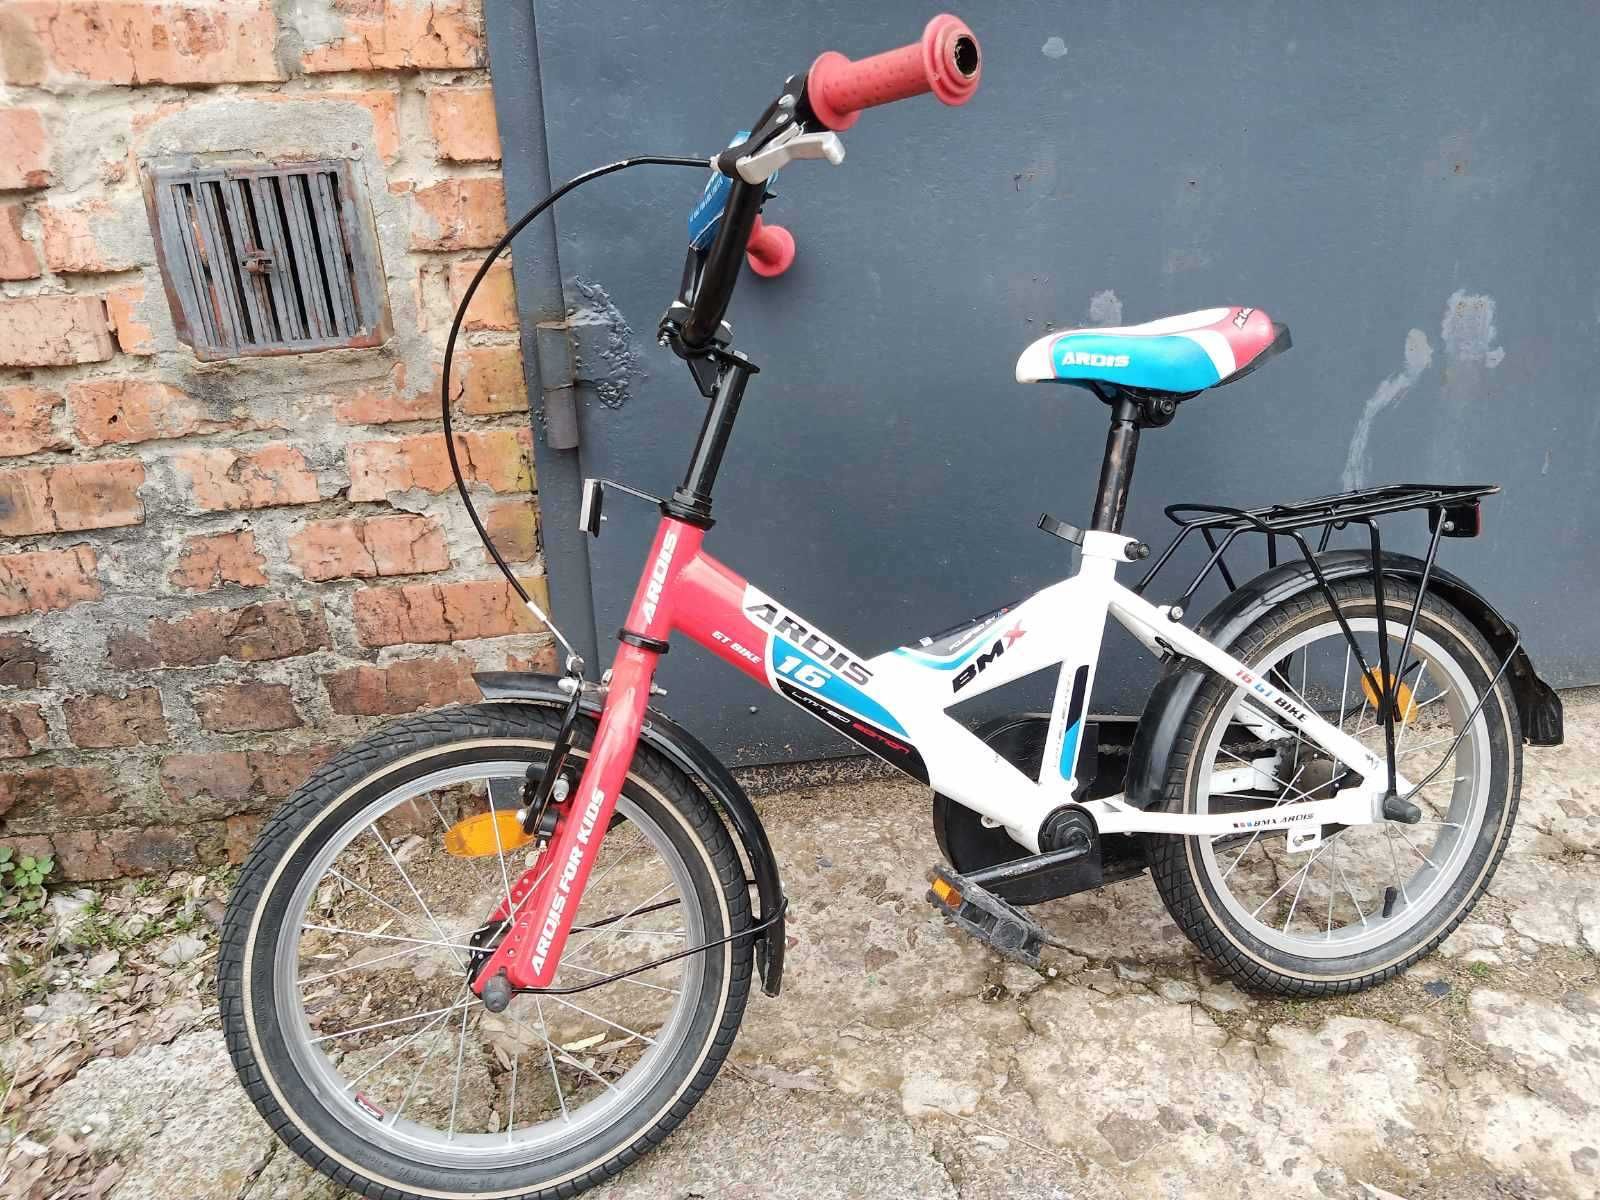 Детский велосипед ARDIS GT BIKE 16"